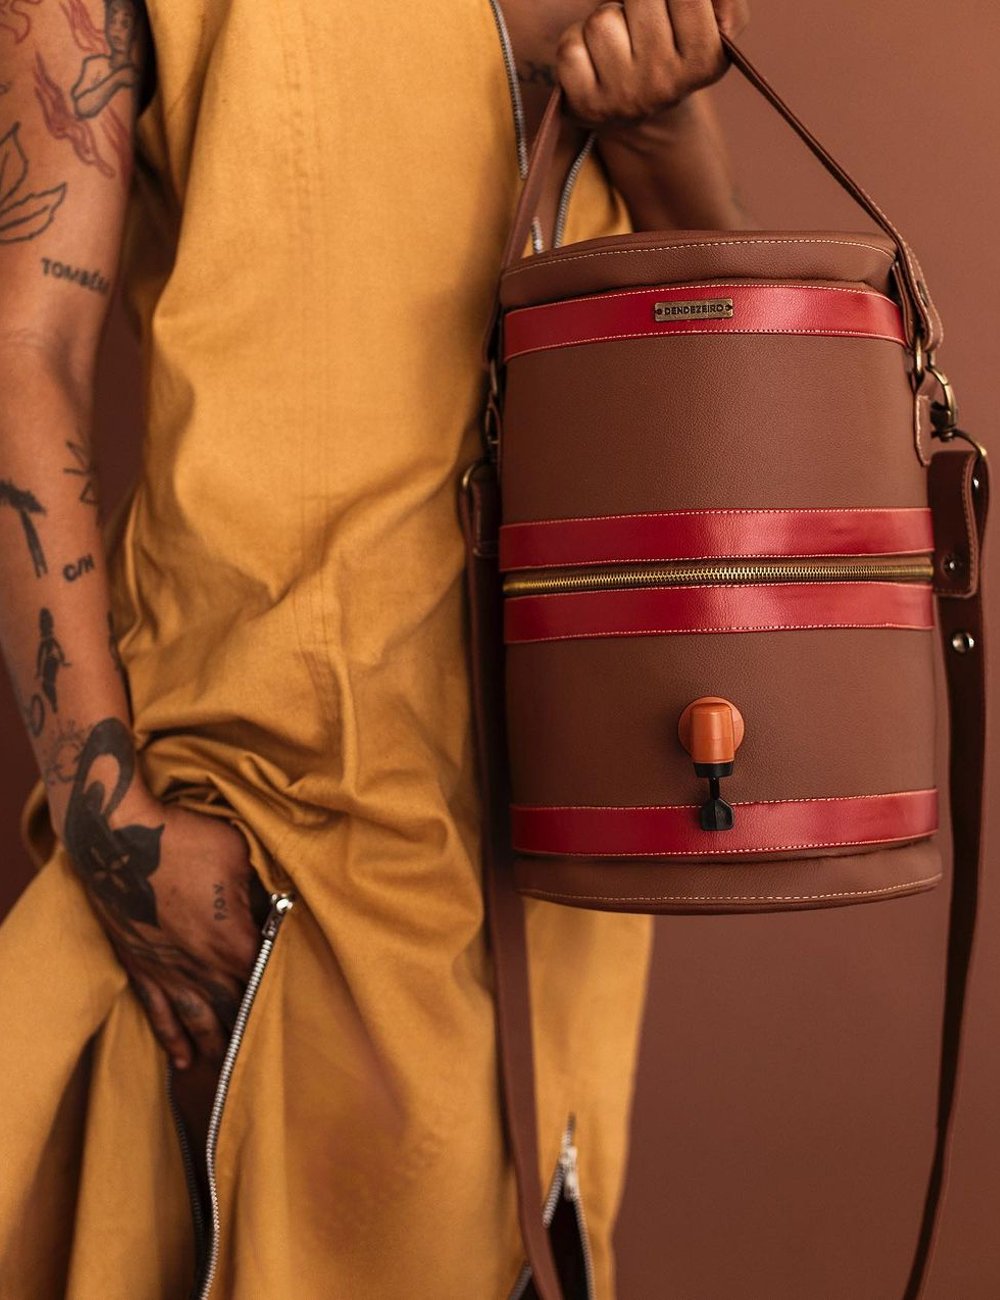 Bag Filtro de Barro - estilistas - Dendezeiro - carreira - Moda - https://stealthelook.com.br